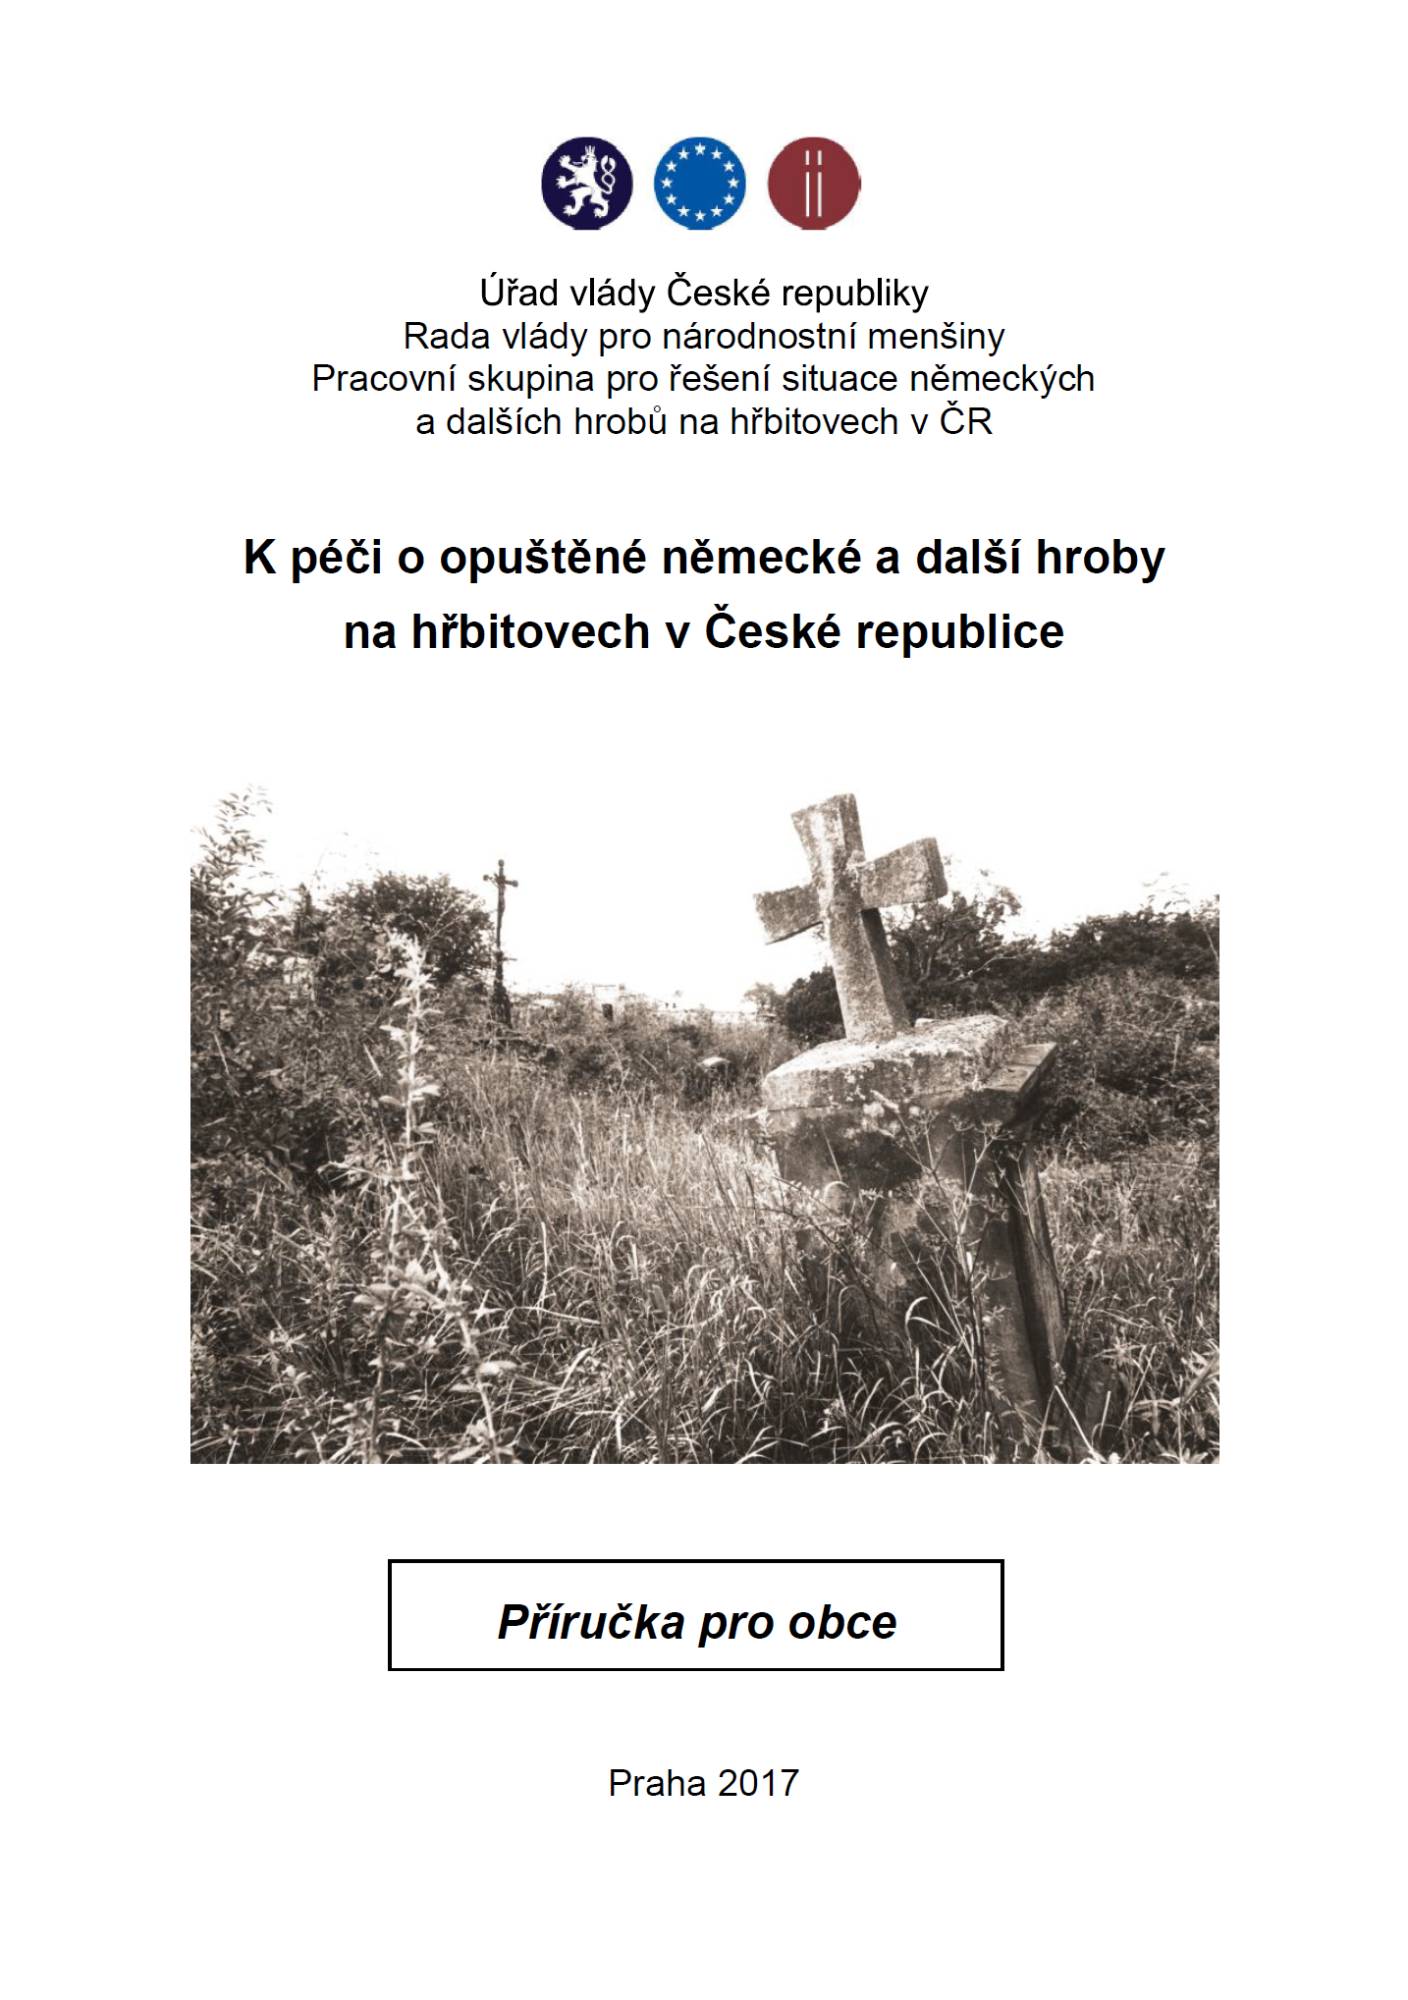 K péči o opuštěné německé a další hroby na hřbitovech v ČR